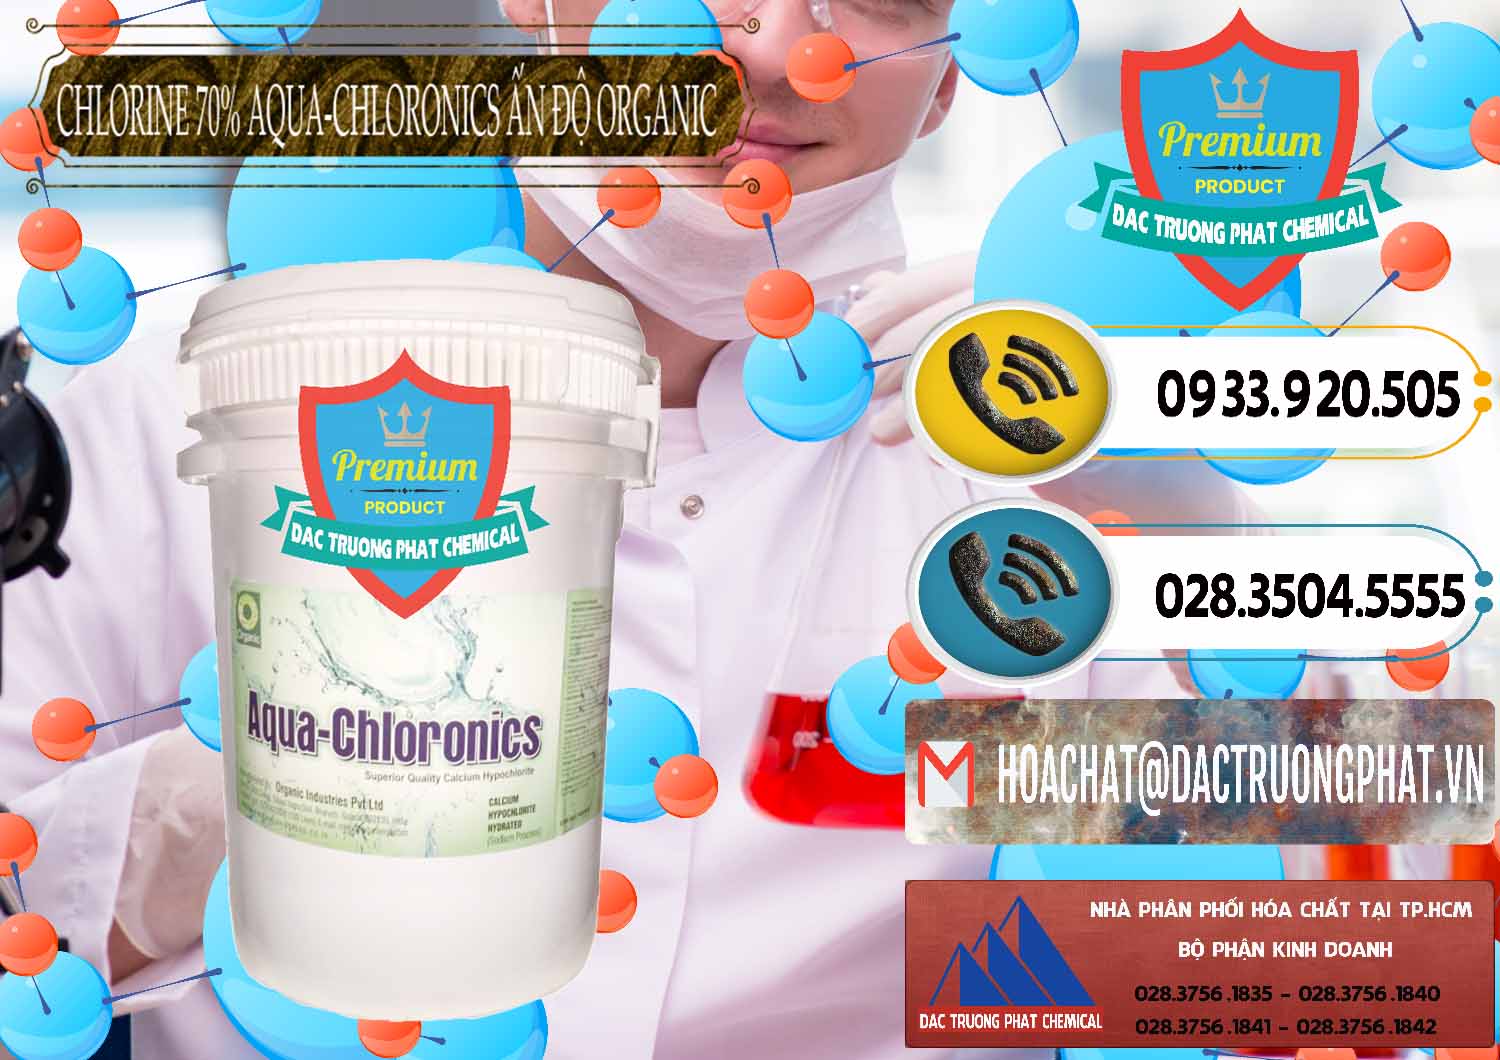 Nhà cung ứng - bán Chlorine – Clorin 70% Aqua-Chloronics Ấn Độ Organic India - 0211 - Cty phân phối - cung ứng hóa chất tại TP.HCM - hoachatdetnhuom.vn